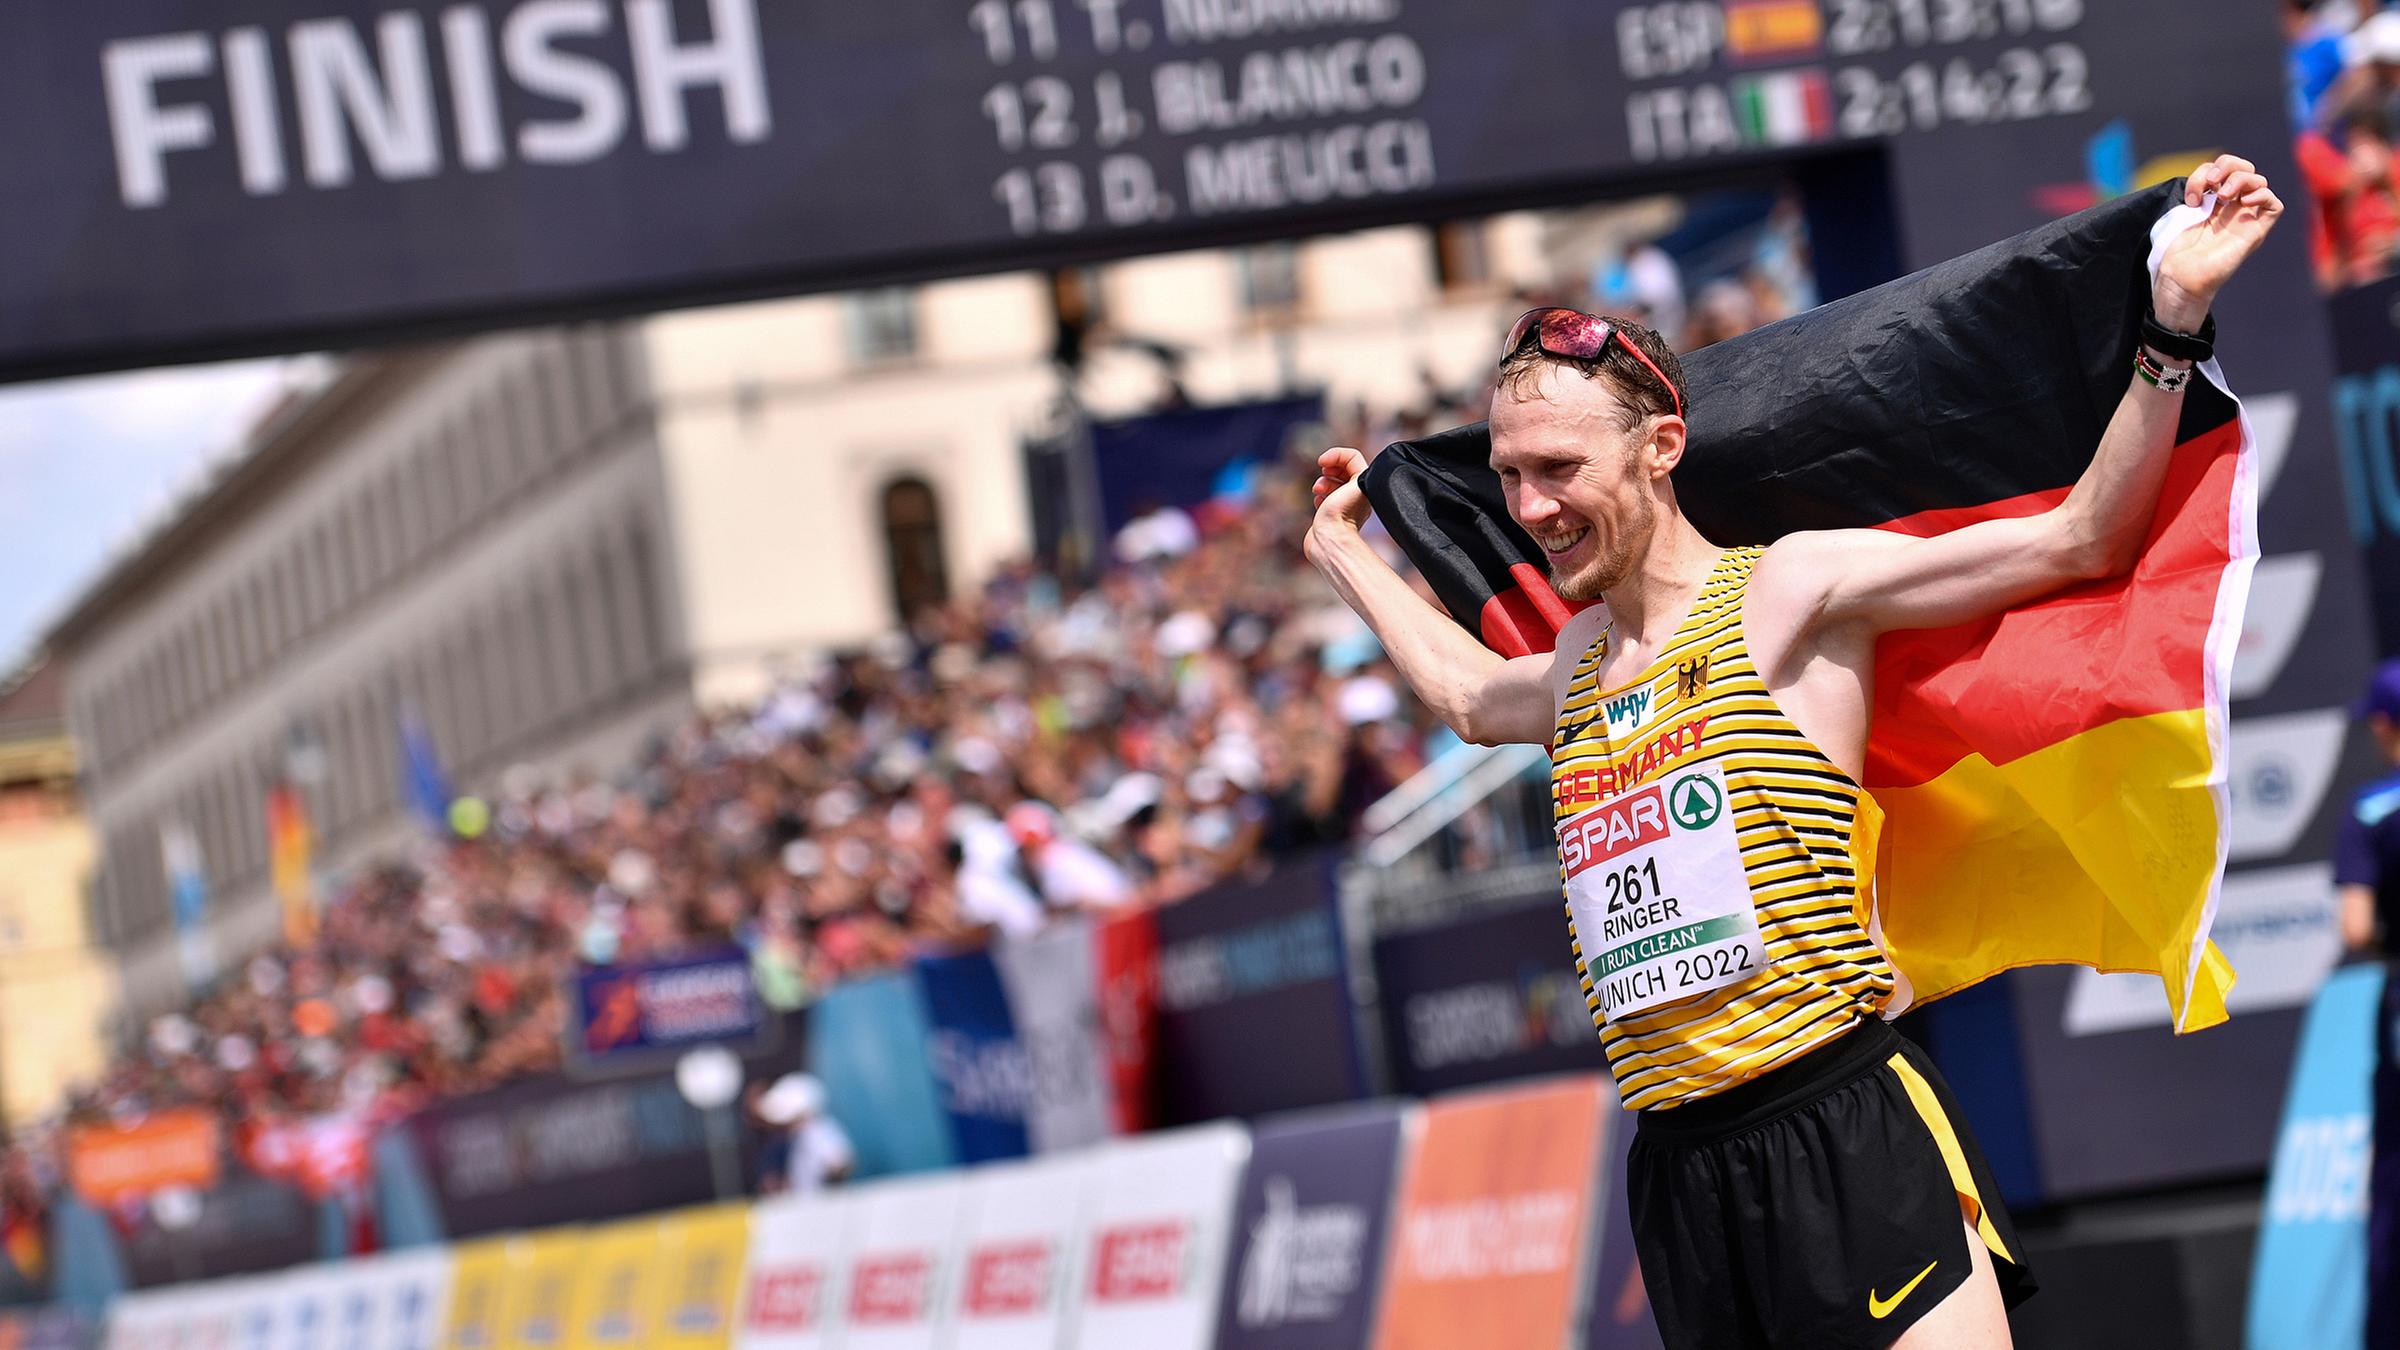 Der deutschen Marathonläufer Richard Ringer gewinnt das Rennen und jubelt nach dem Zieleinlauf.